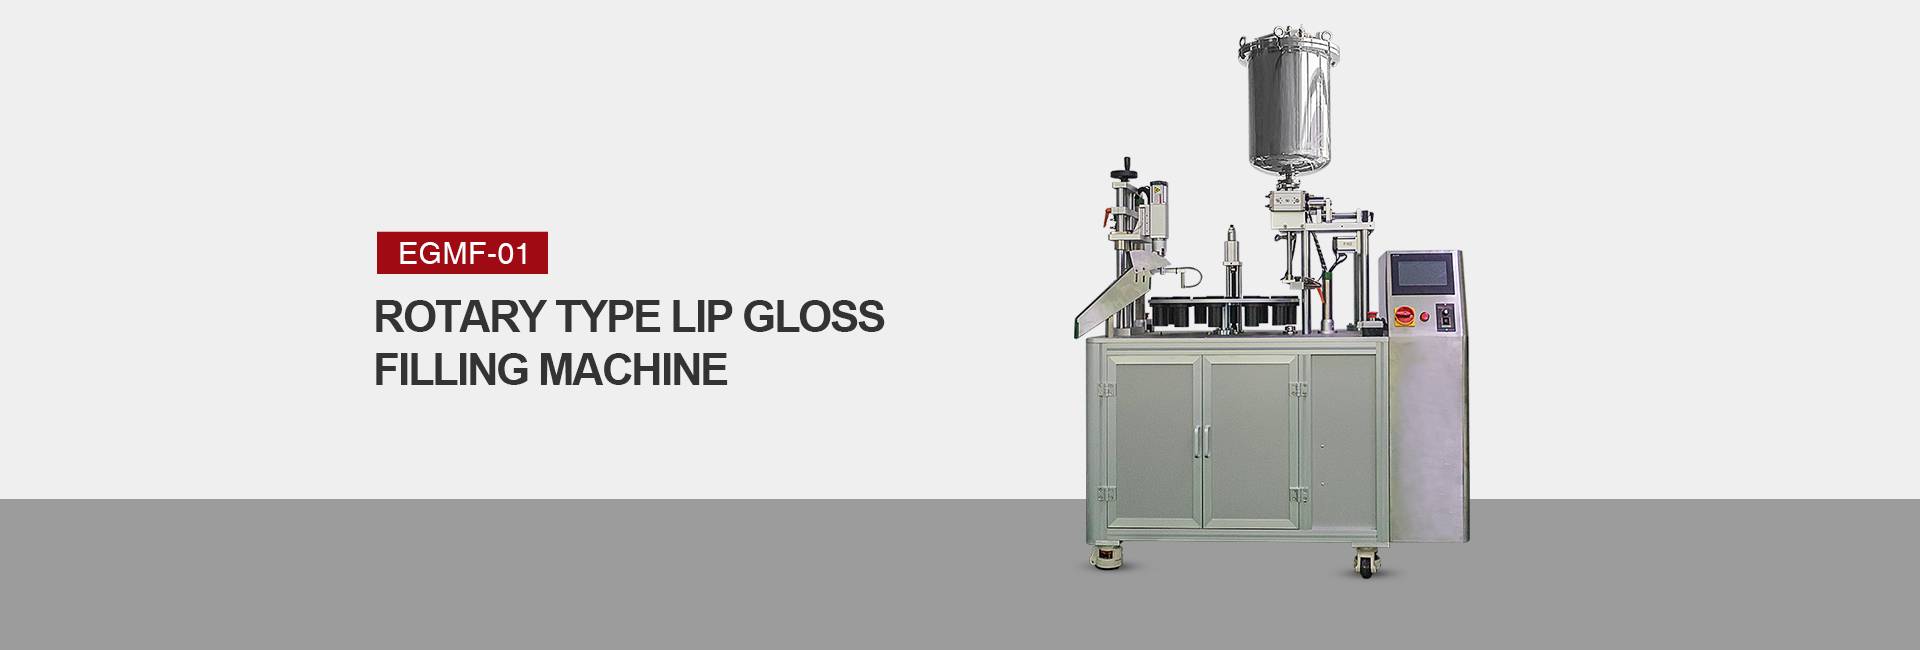 Rotary Type Lip Gloss Filling Machine